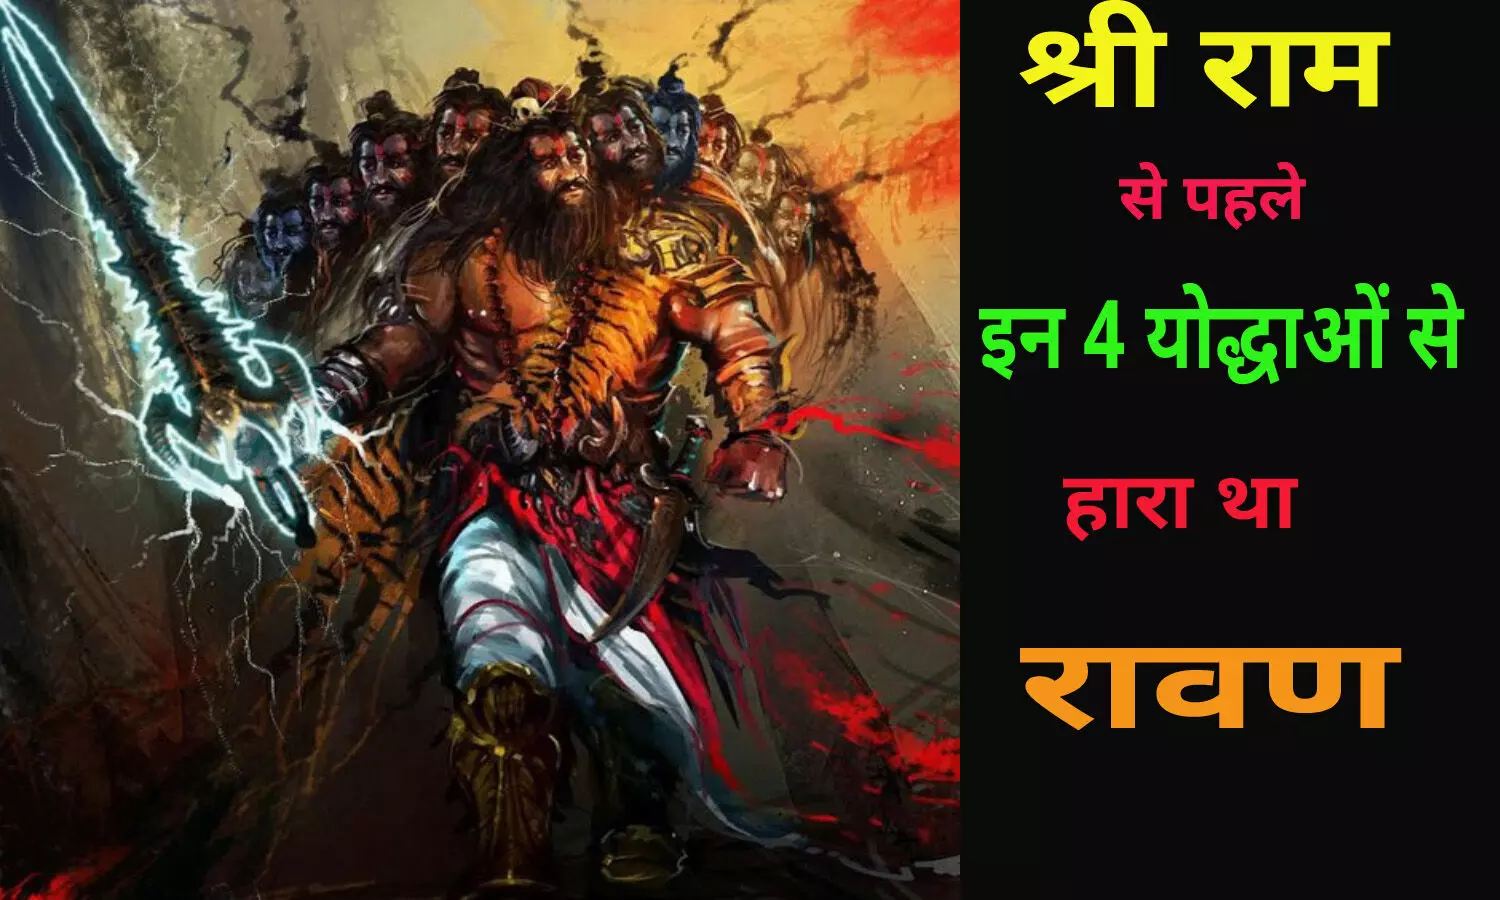 Ravana Defeats : राम से पहले रावण को किस-किसने हराया था? जानें कौन थे चार लोग जिन्होंने बुरी तरह रावण को पराजित किया था